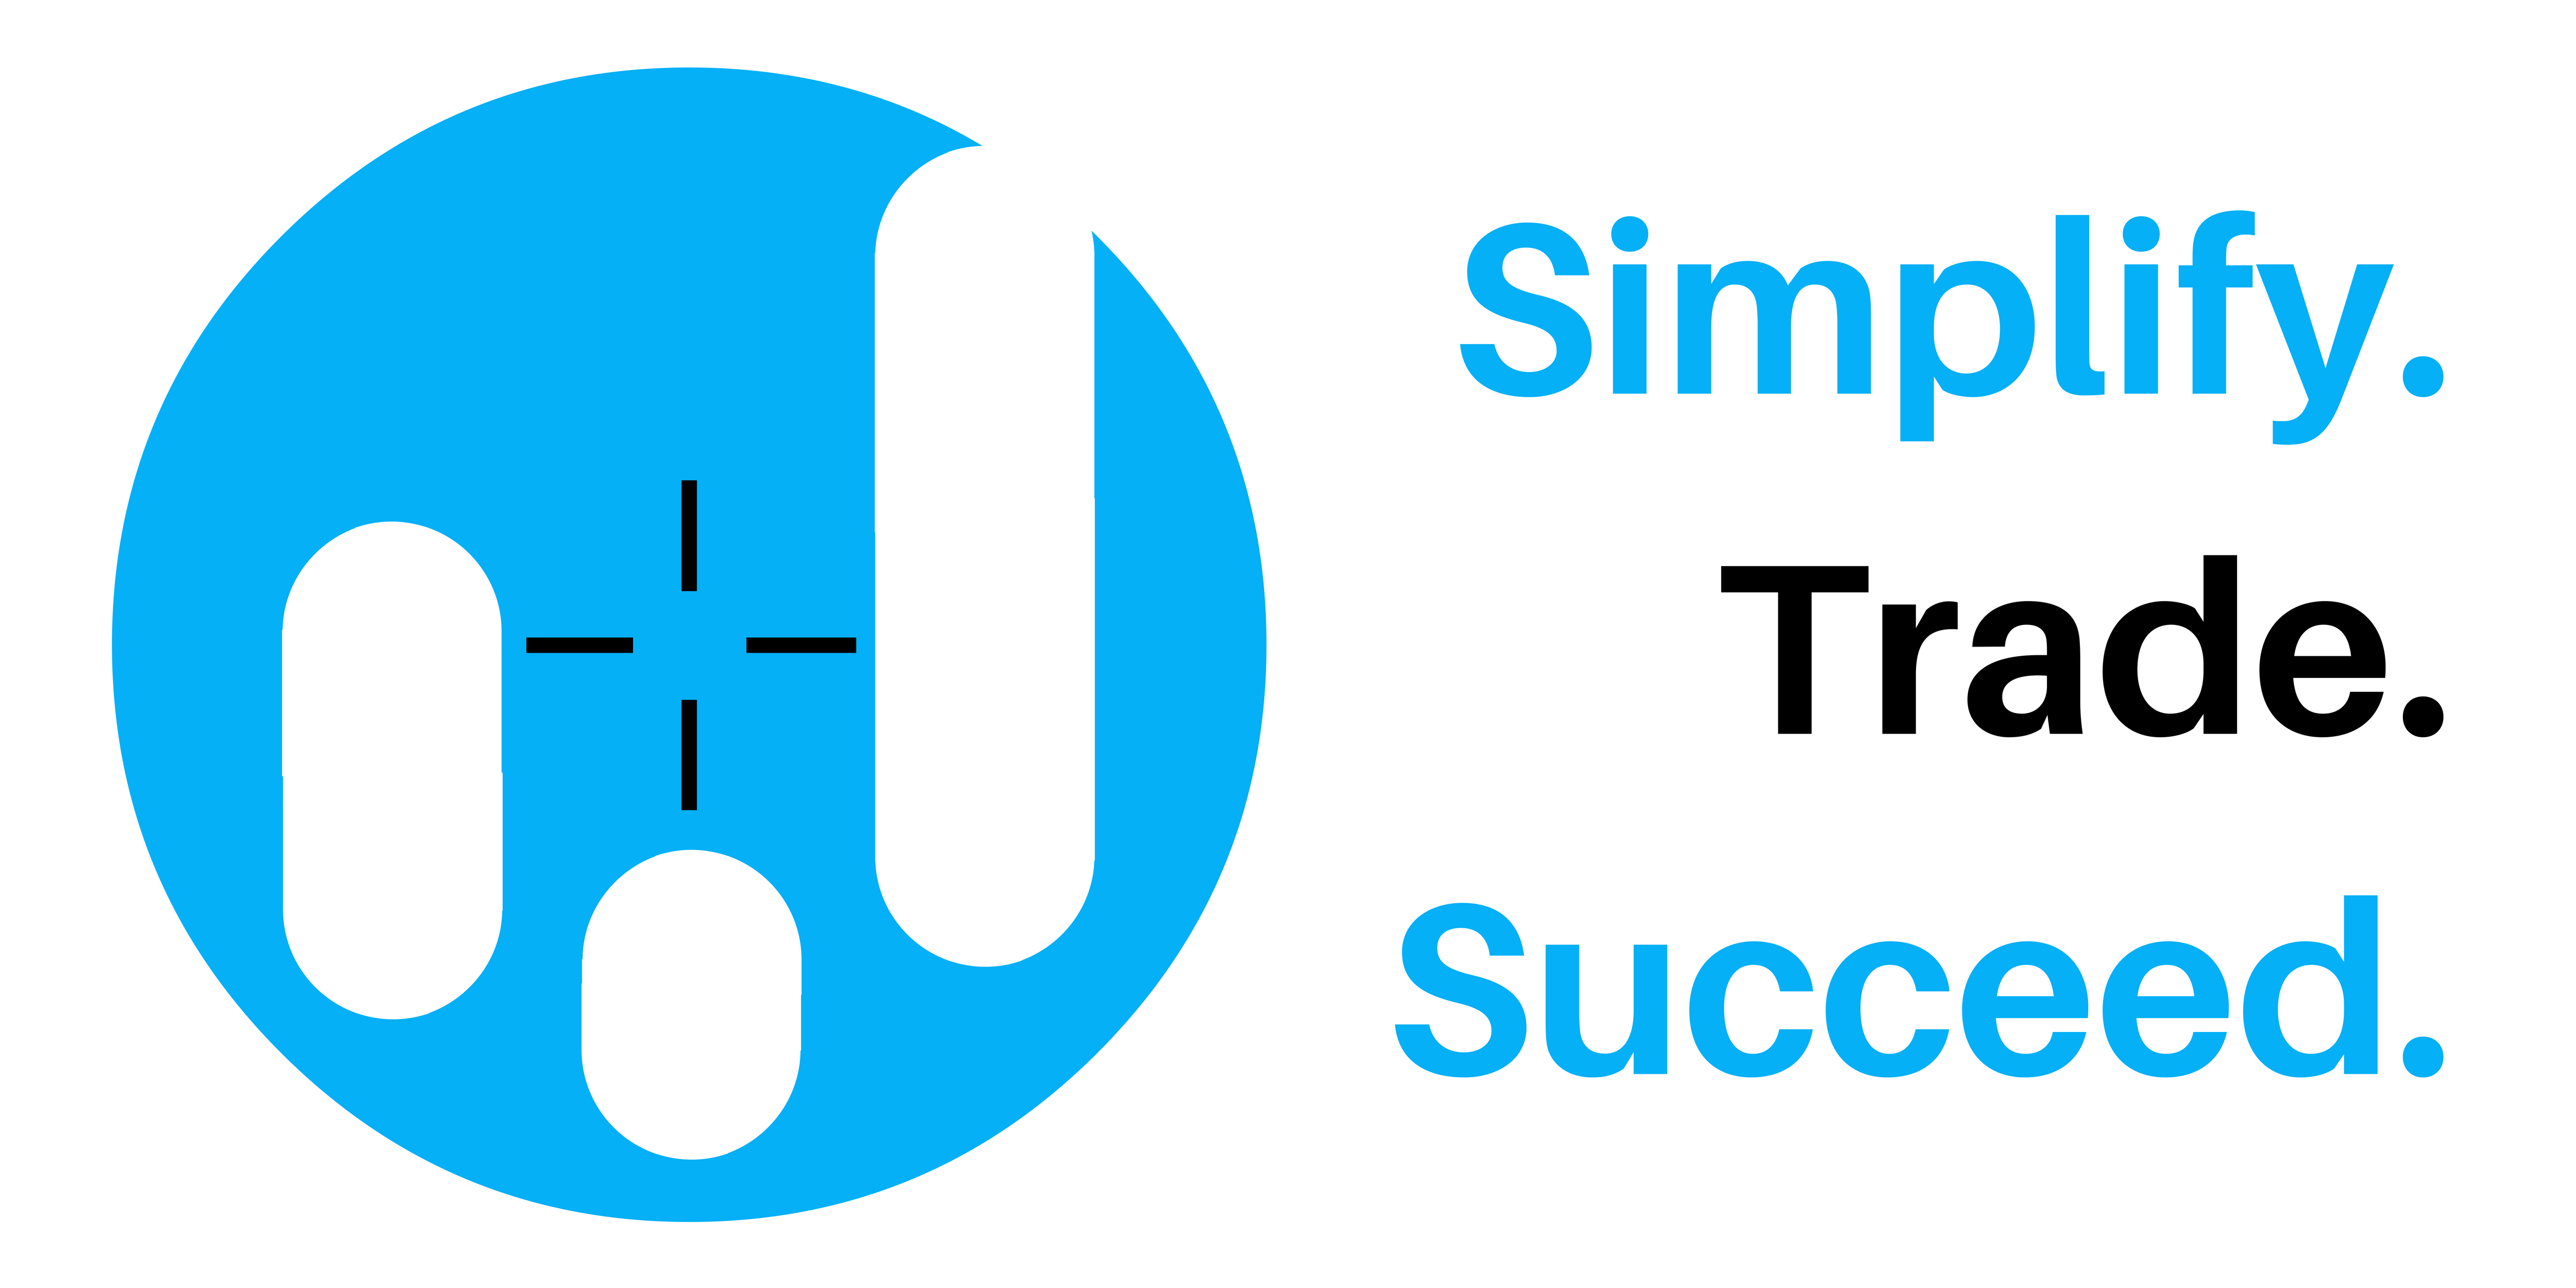 Simplify Trade Succeed